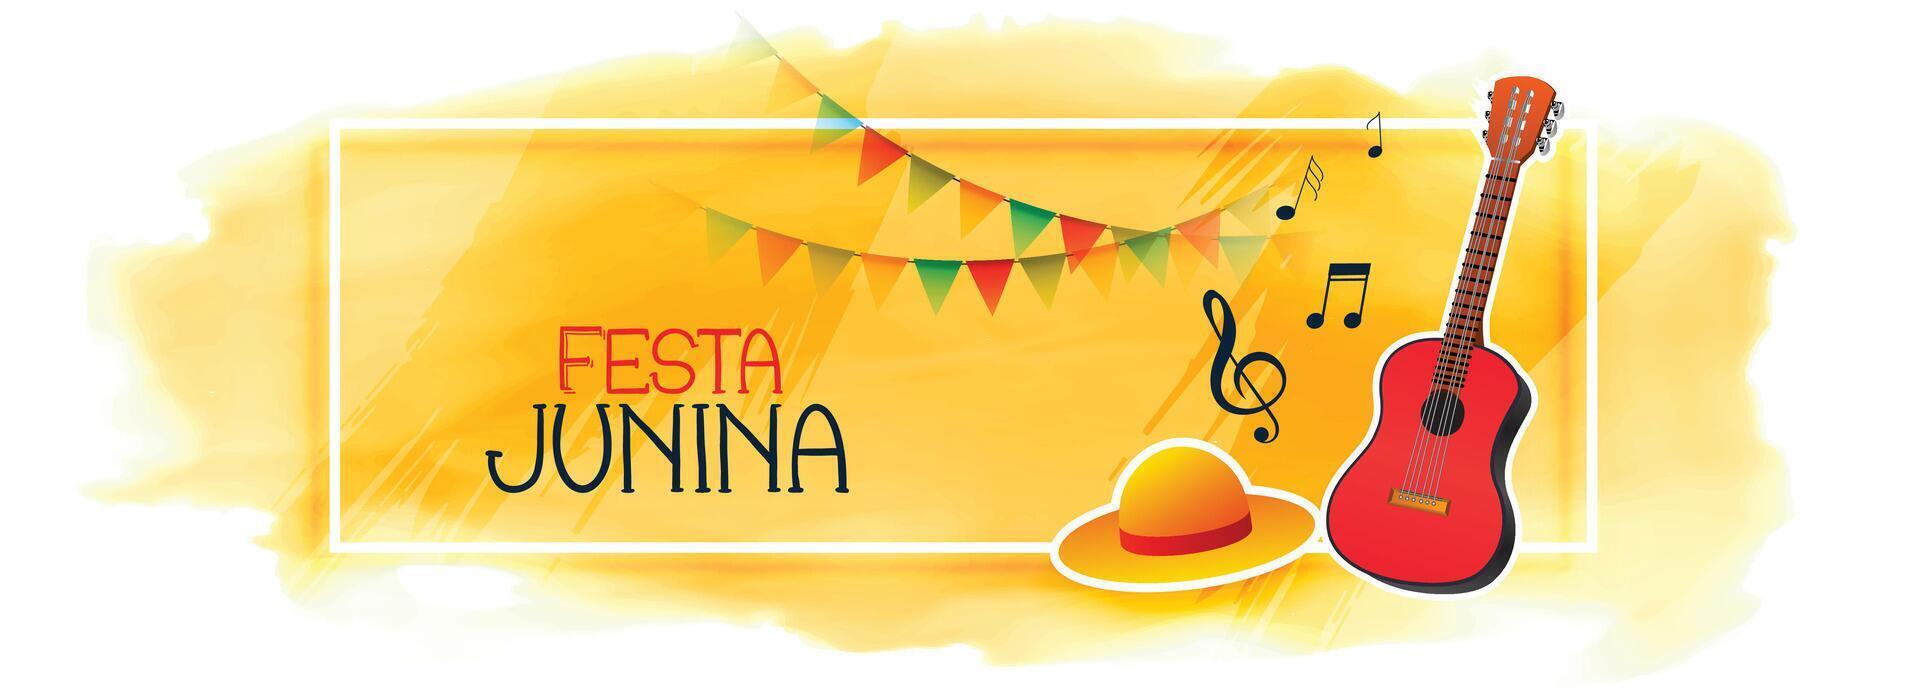 Feier Banner zum festa junina mit Gitarre und Hut vektor